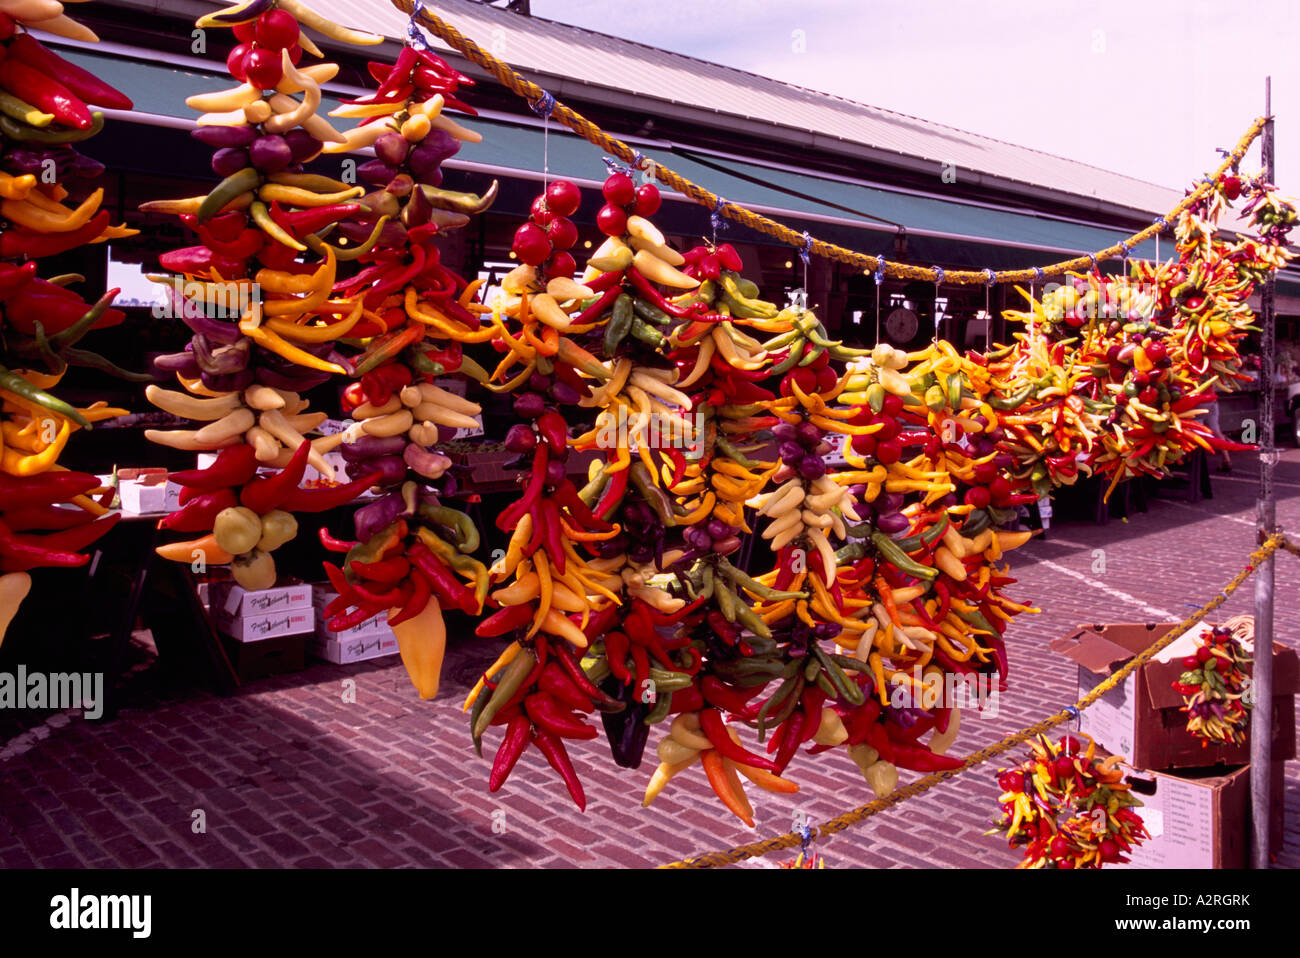 Pike Place Market, Seattle, Washington State, USA - Peperoni hängen auf dem Display zu verkaufen Stockfoto